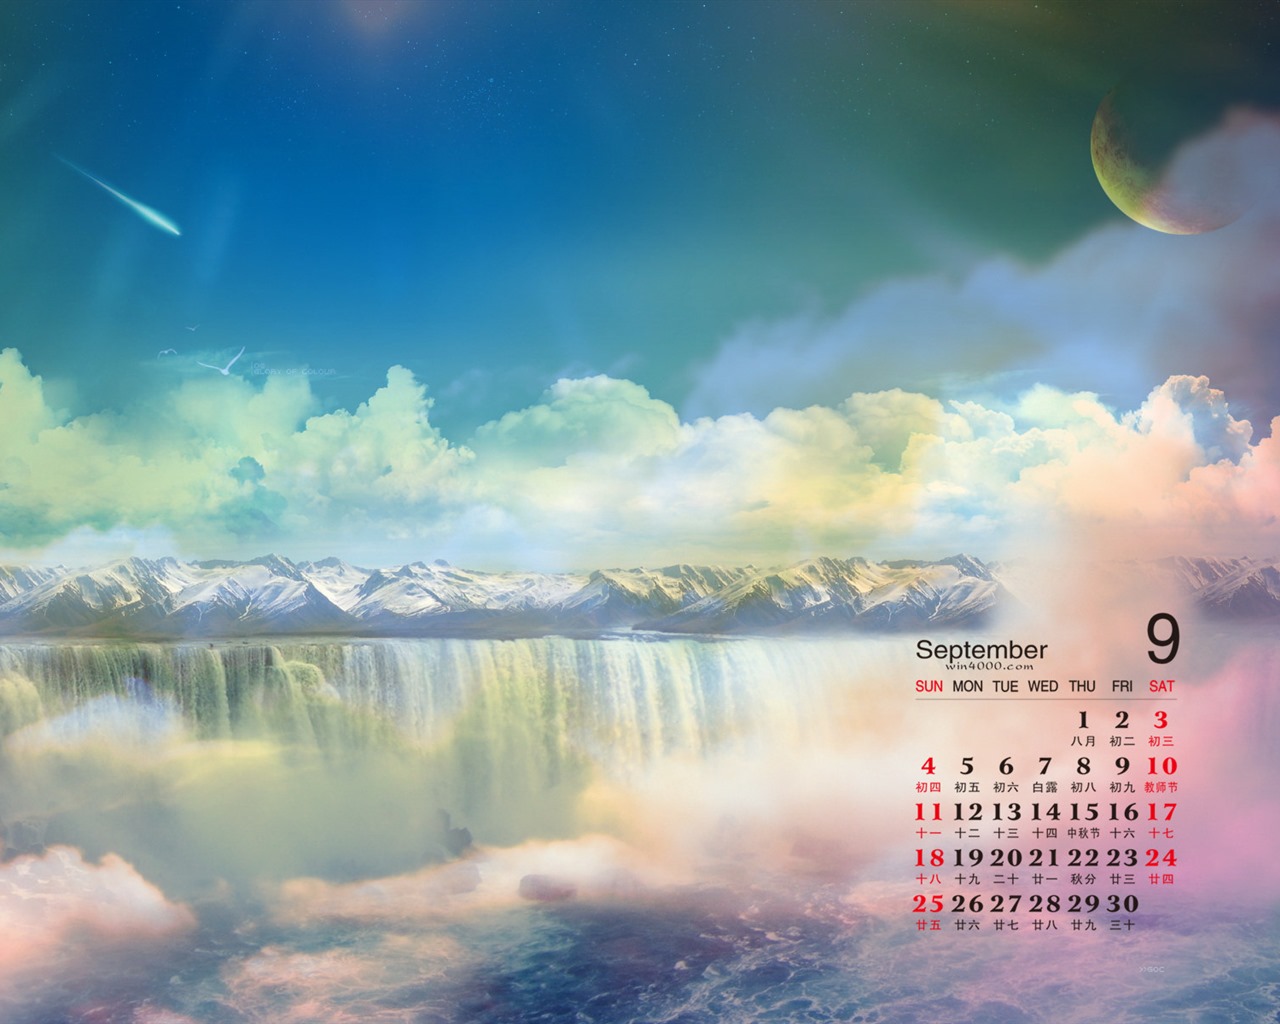 September 2016 calendar wallpaper (1) #14 - 1280x1024